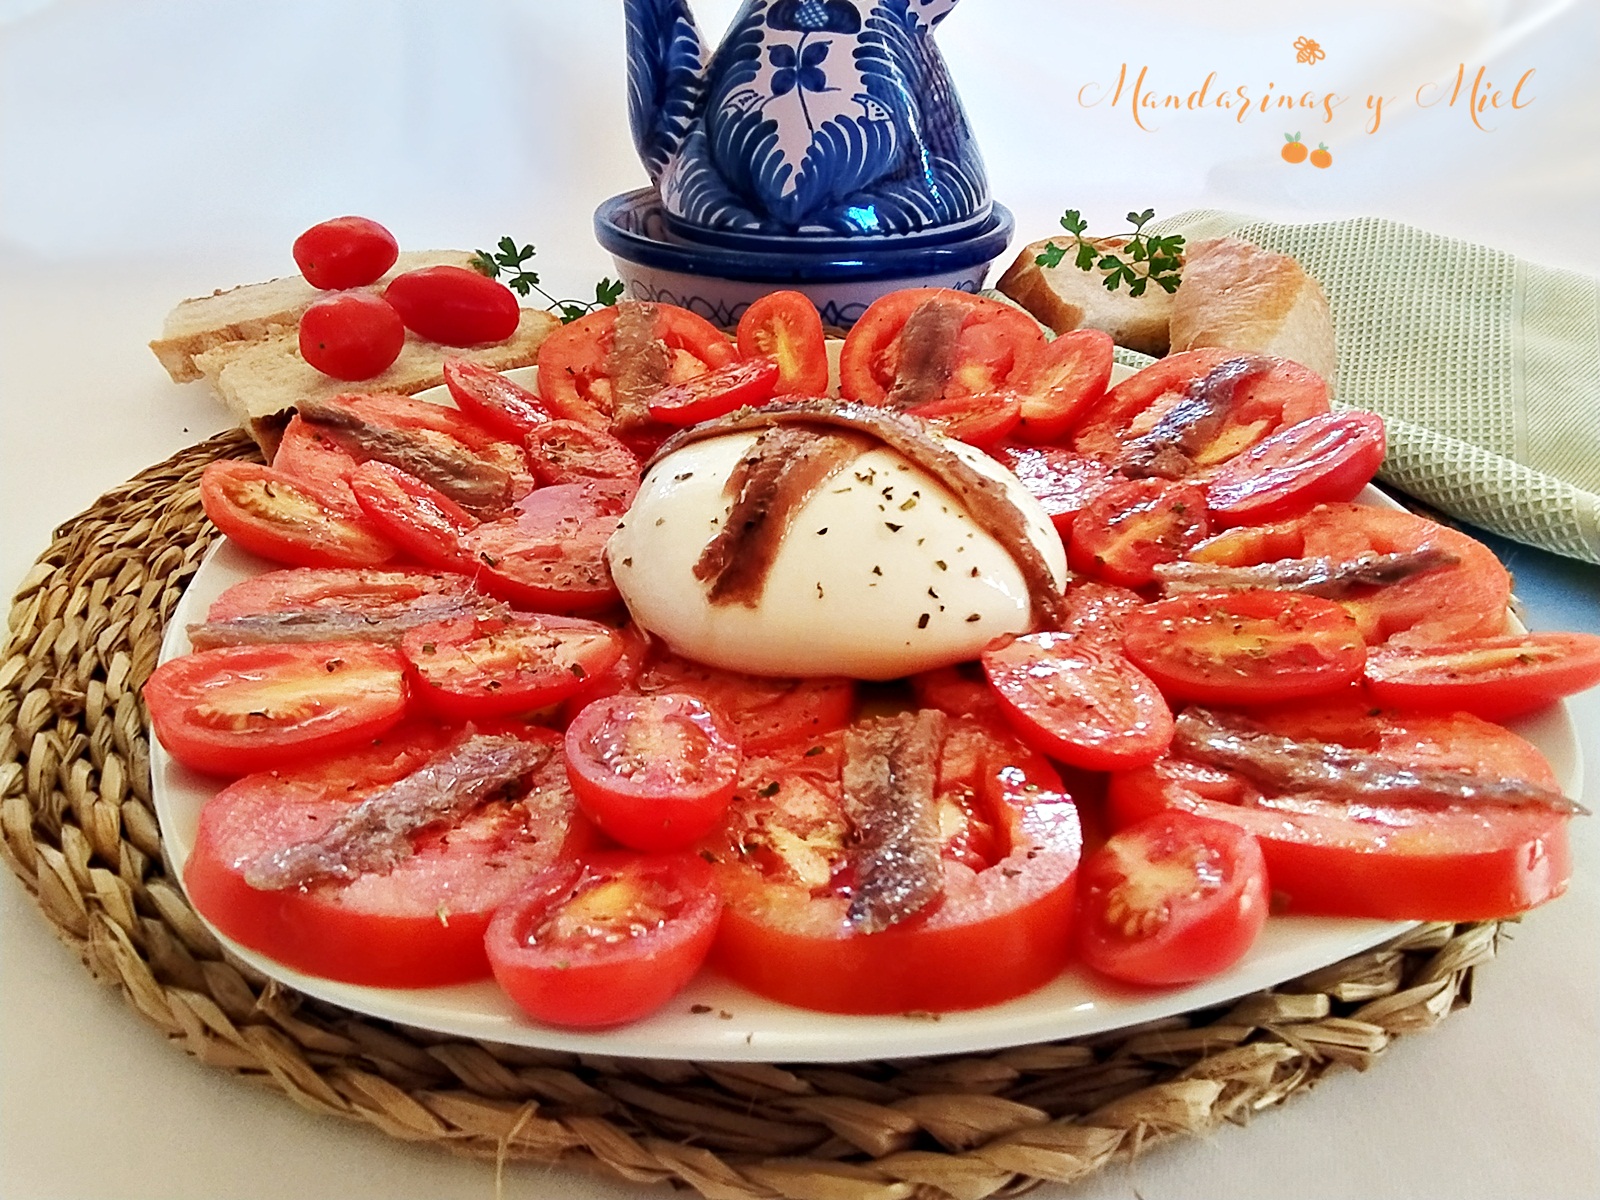 Ensalada de tomate, burrata y anchoas | Mandarinas y miel